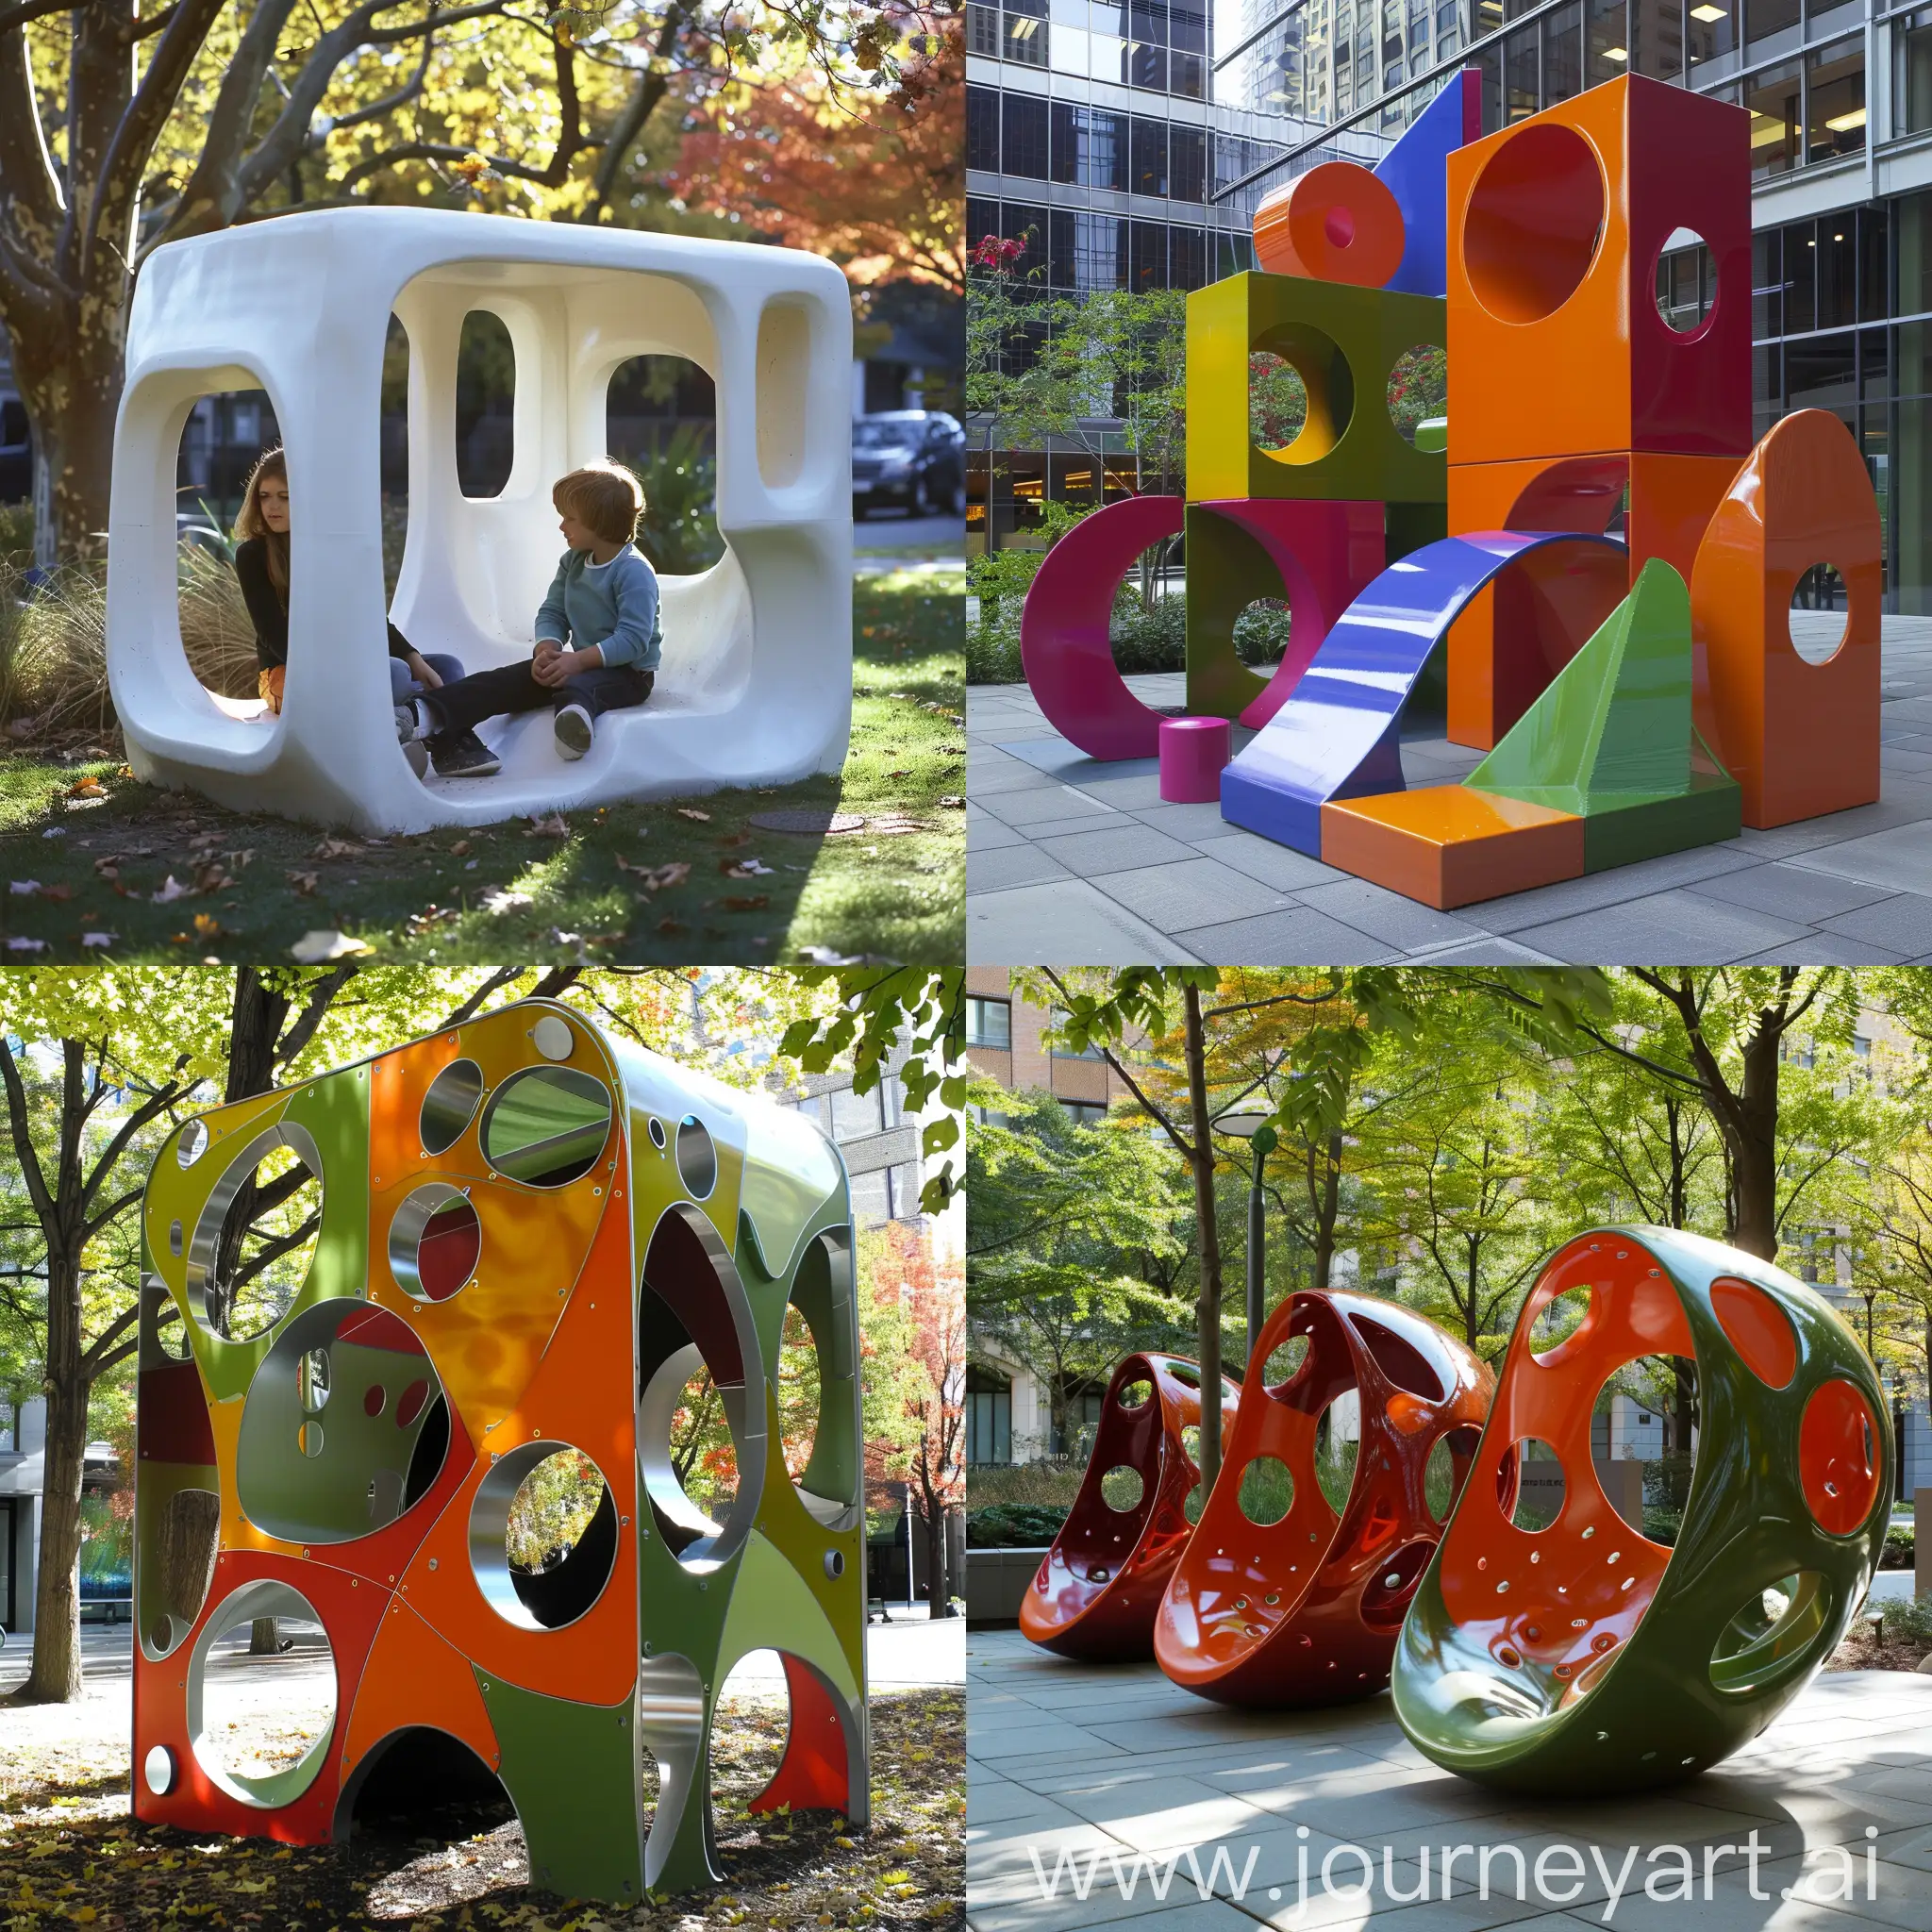 Playful-Urban-Play-Sculptures-for-Children